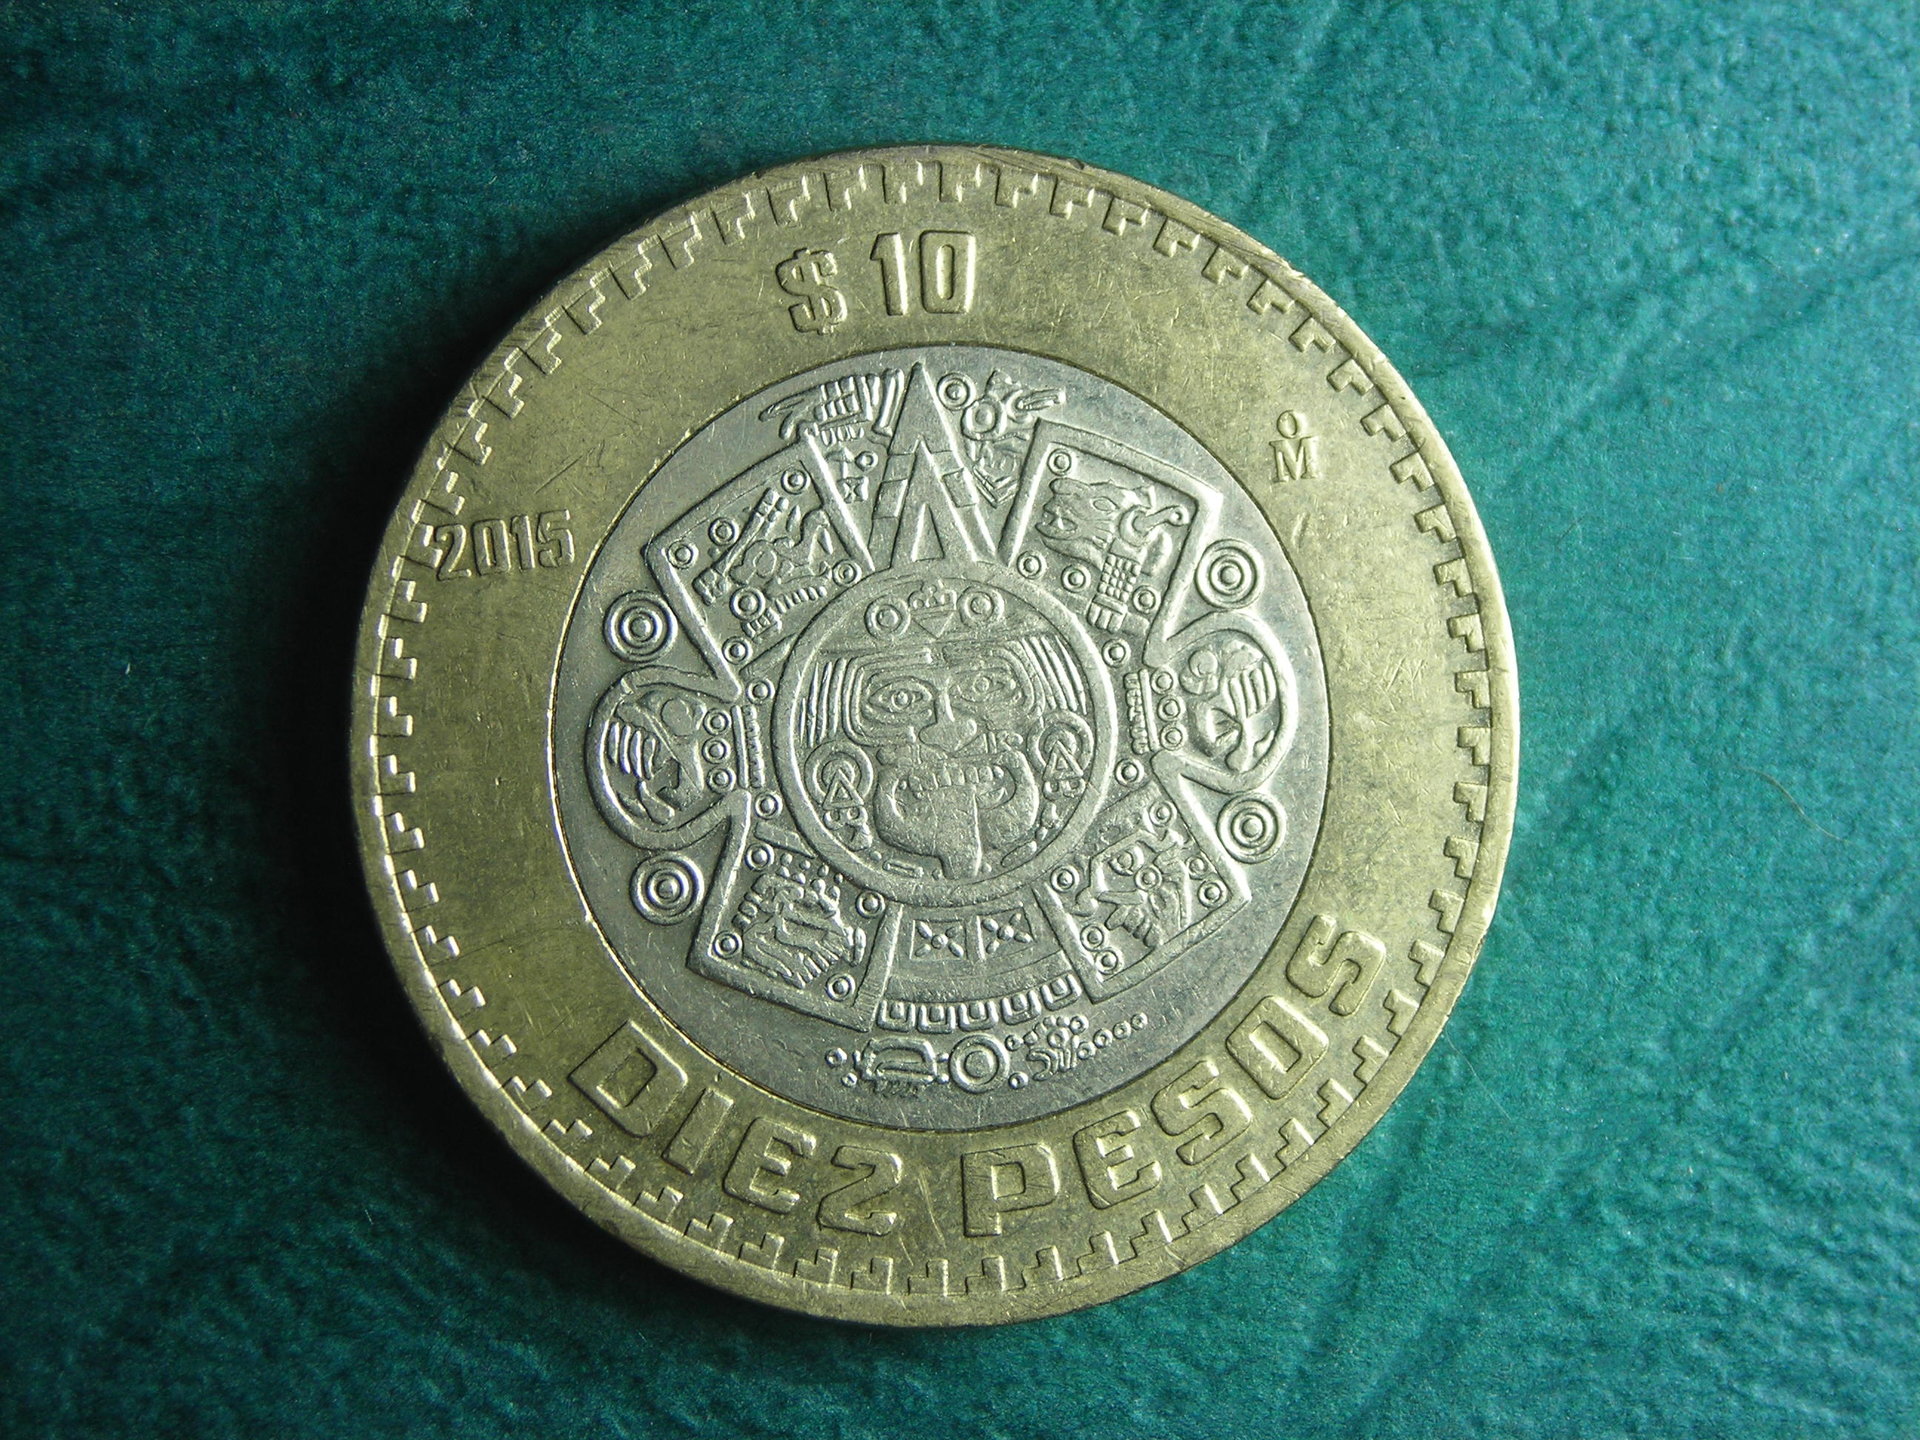 2015 Mexico 10 peso rev.JPG